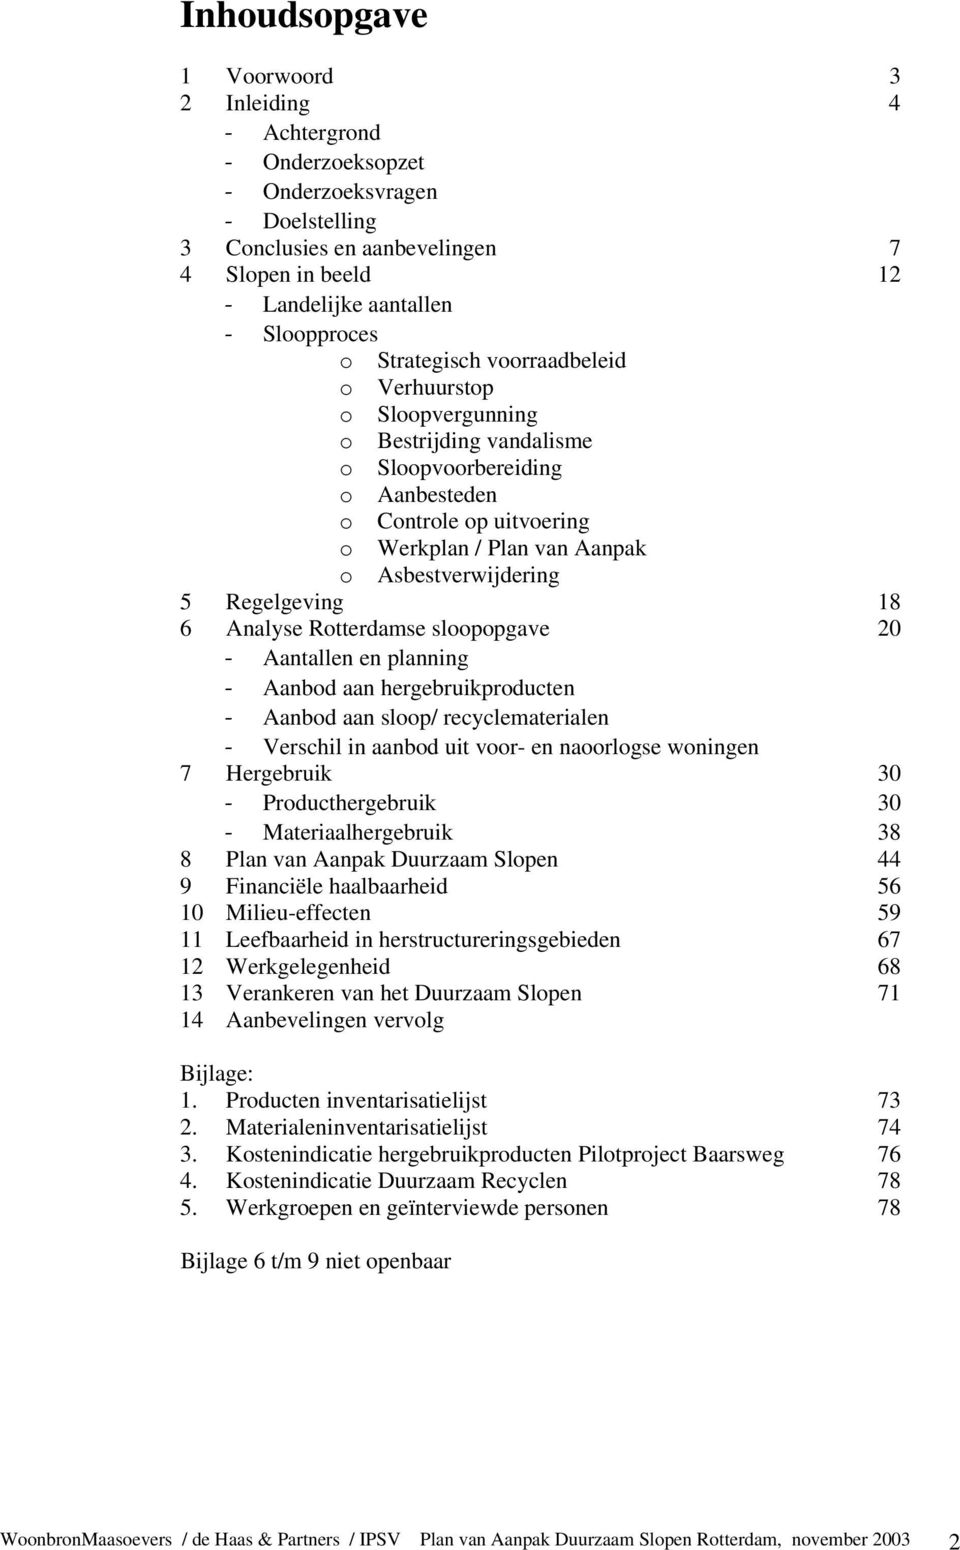 6 Analyse Rotterdamse sloopopgave 20 Aantallen en planning Aanbod aan hergebruikproducten Aanbod aan sloop/ recyclematerialen Verschil in aanbod uit voor- en naoorlogse woningen 7 Hergebruik 30